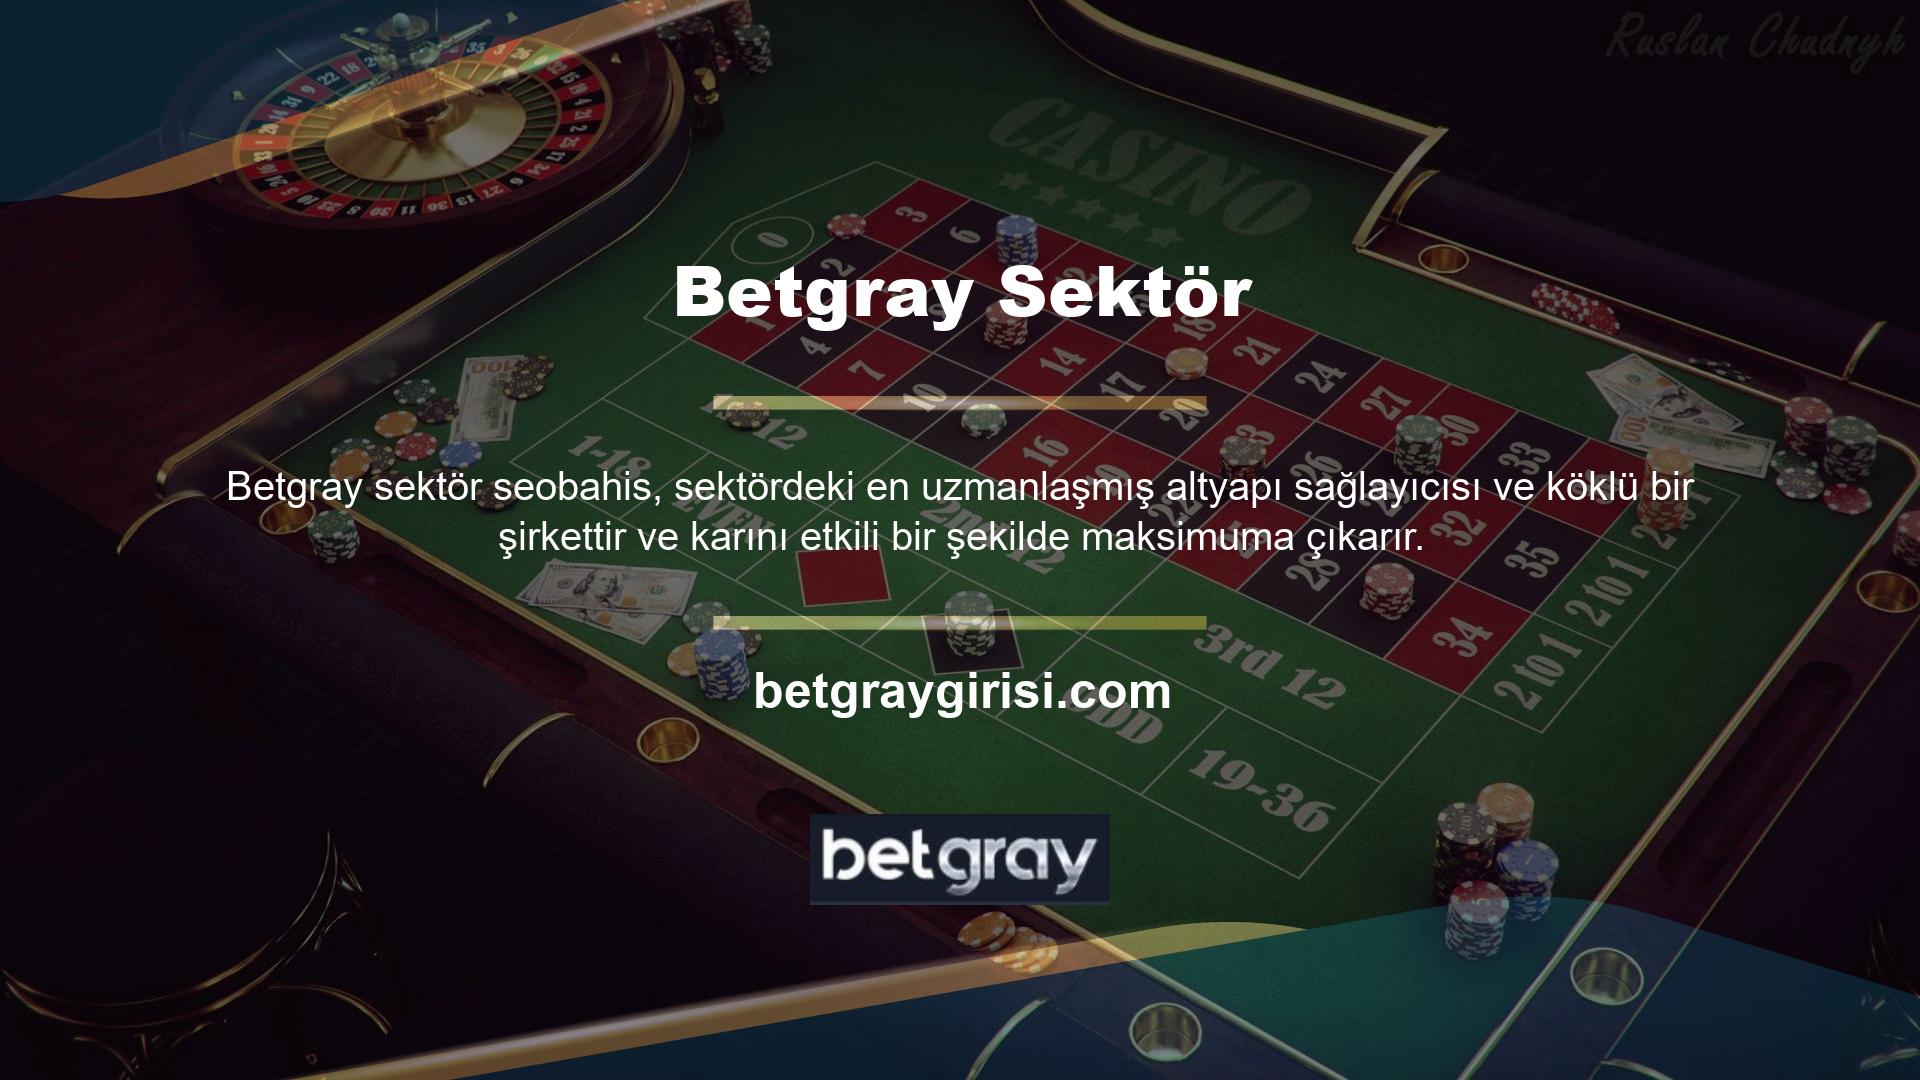 Betgray gelişmiş bahis yaklaşımı, spor bahislerinin, blackjack ve masa oyunları gibi canlı bahis seçeneklerinin, poker, video Poker ve slot makineleri gibi çevrimiçi casino özelliklerinin dahil edilmesini sağlar